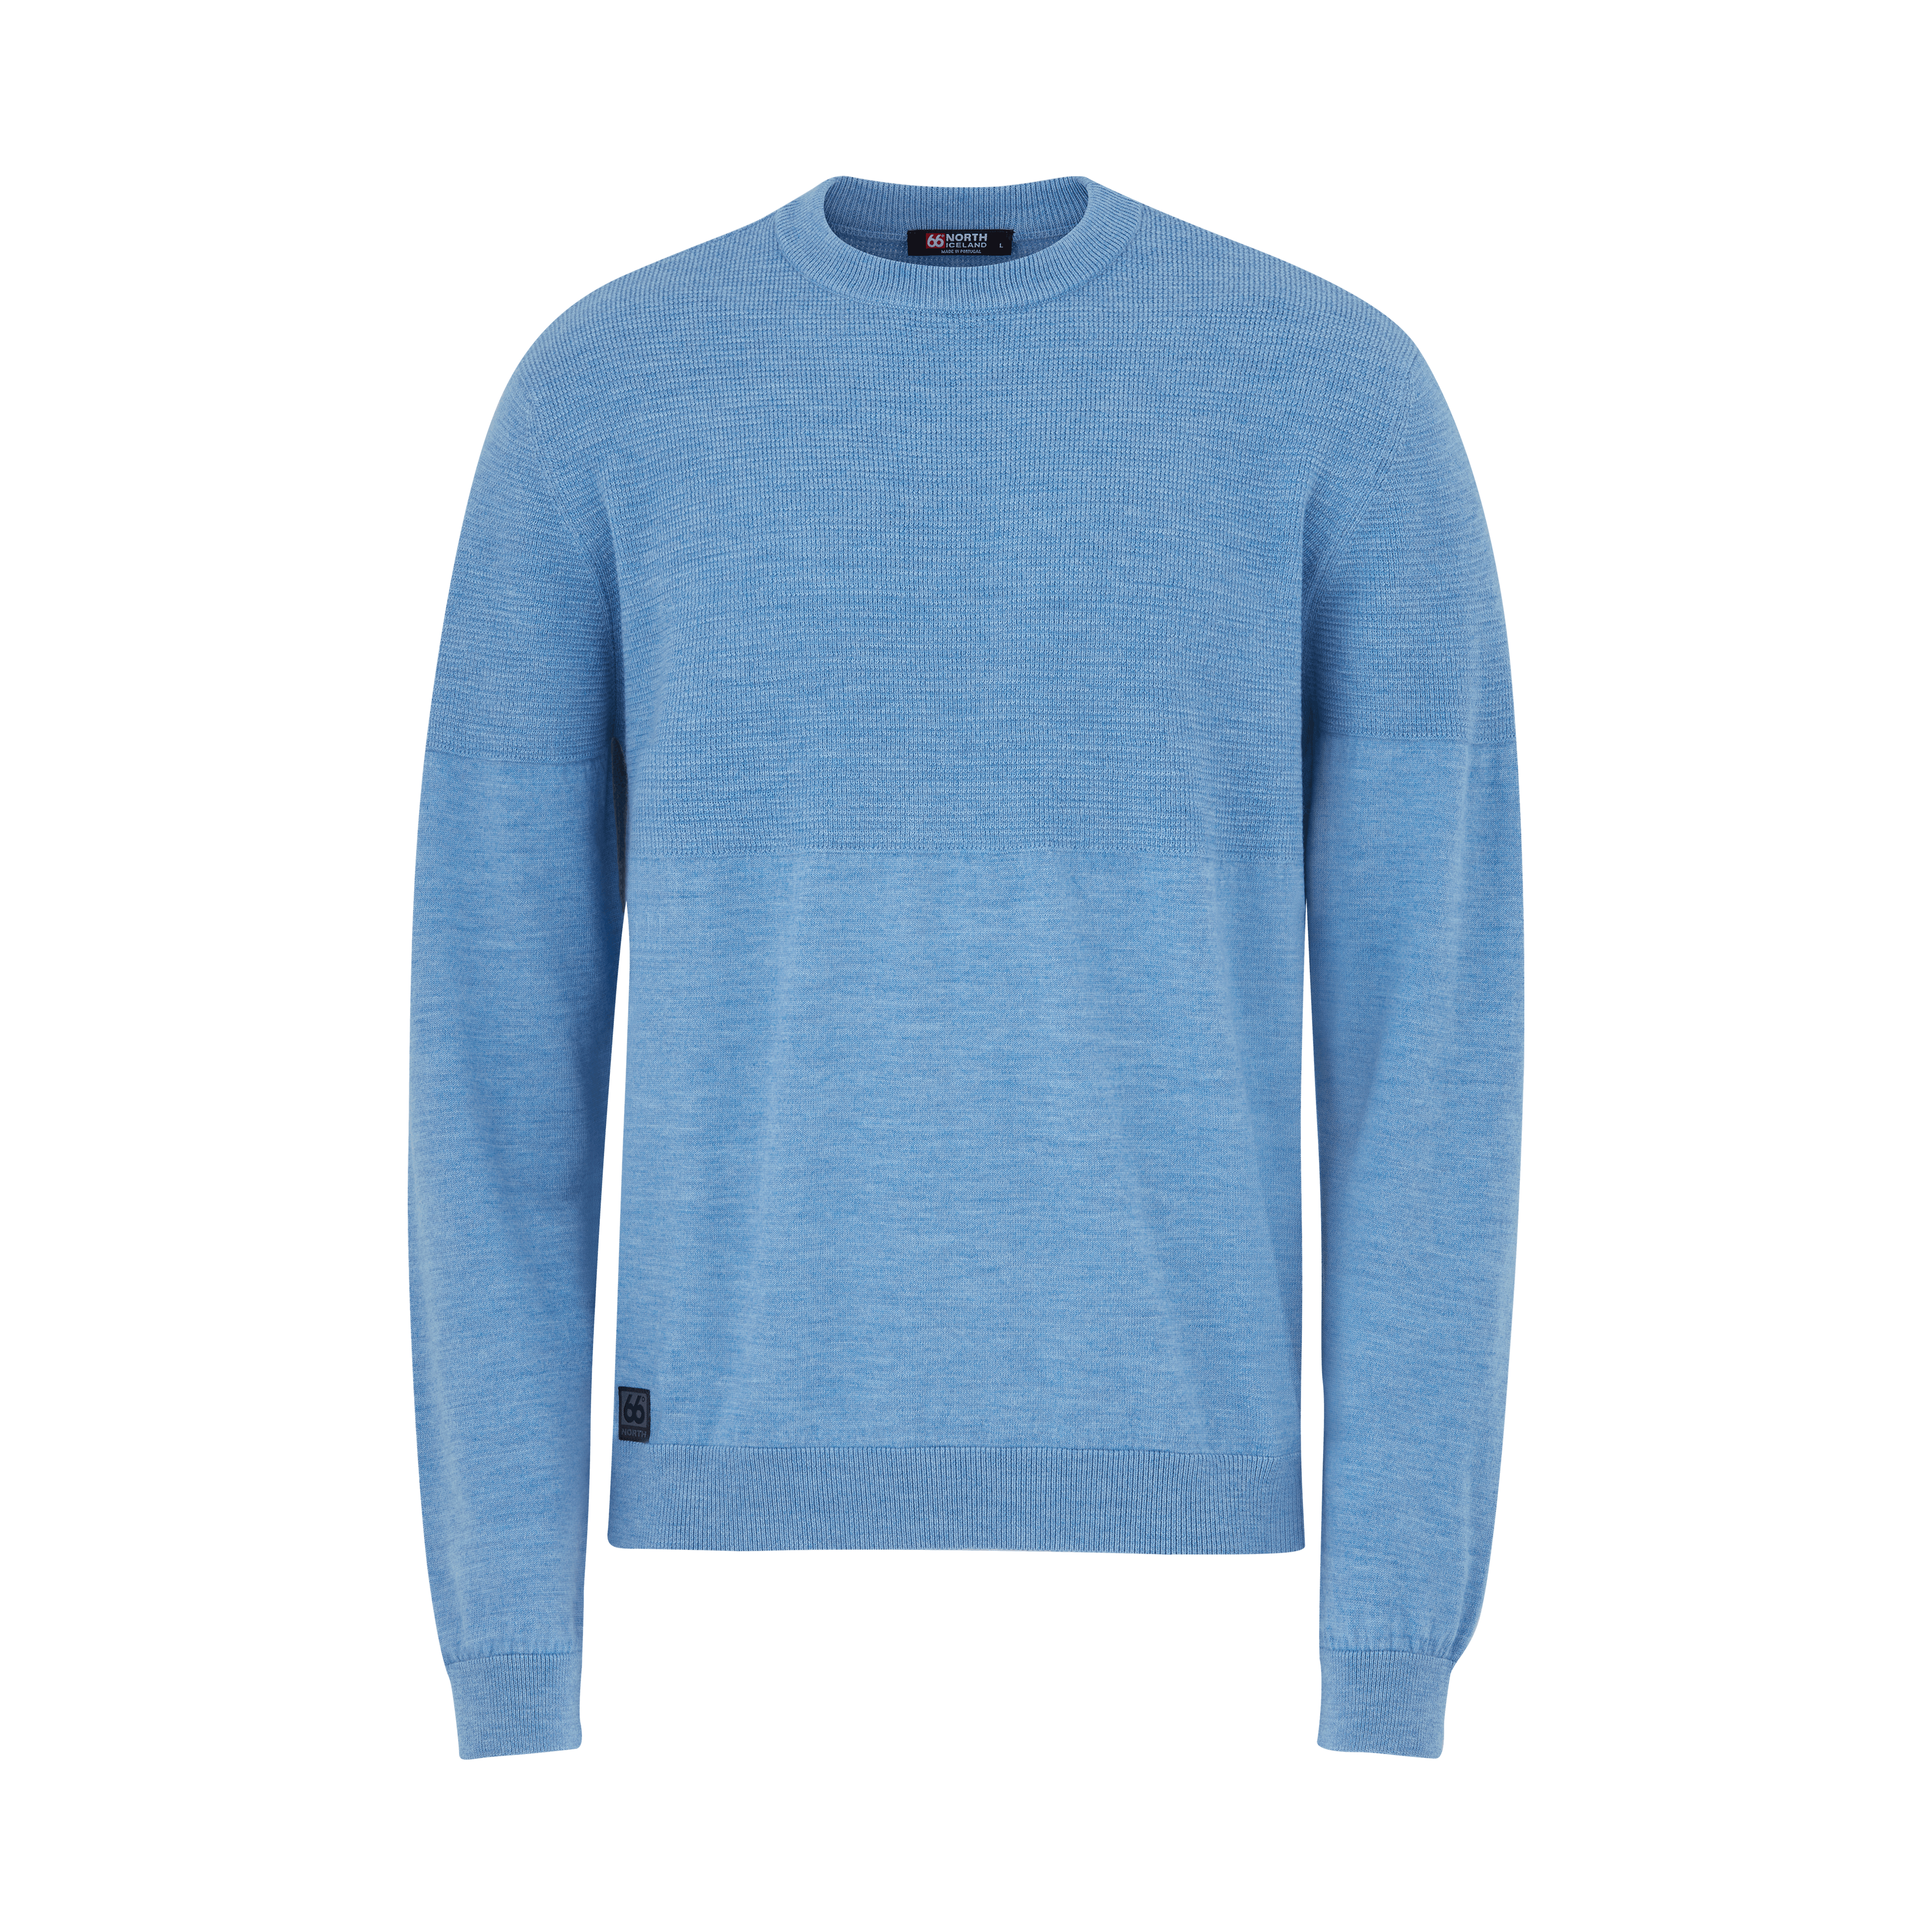 66 North Men's Ögri Tops & Waistcoats In Blue